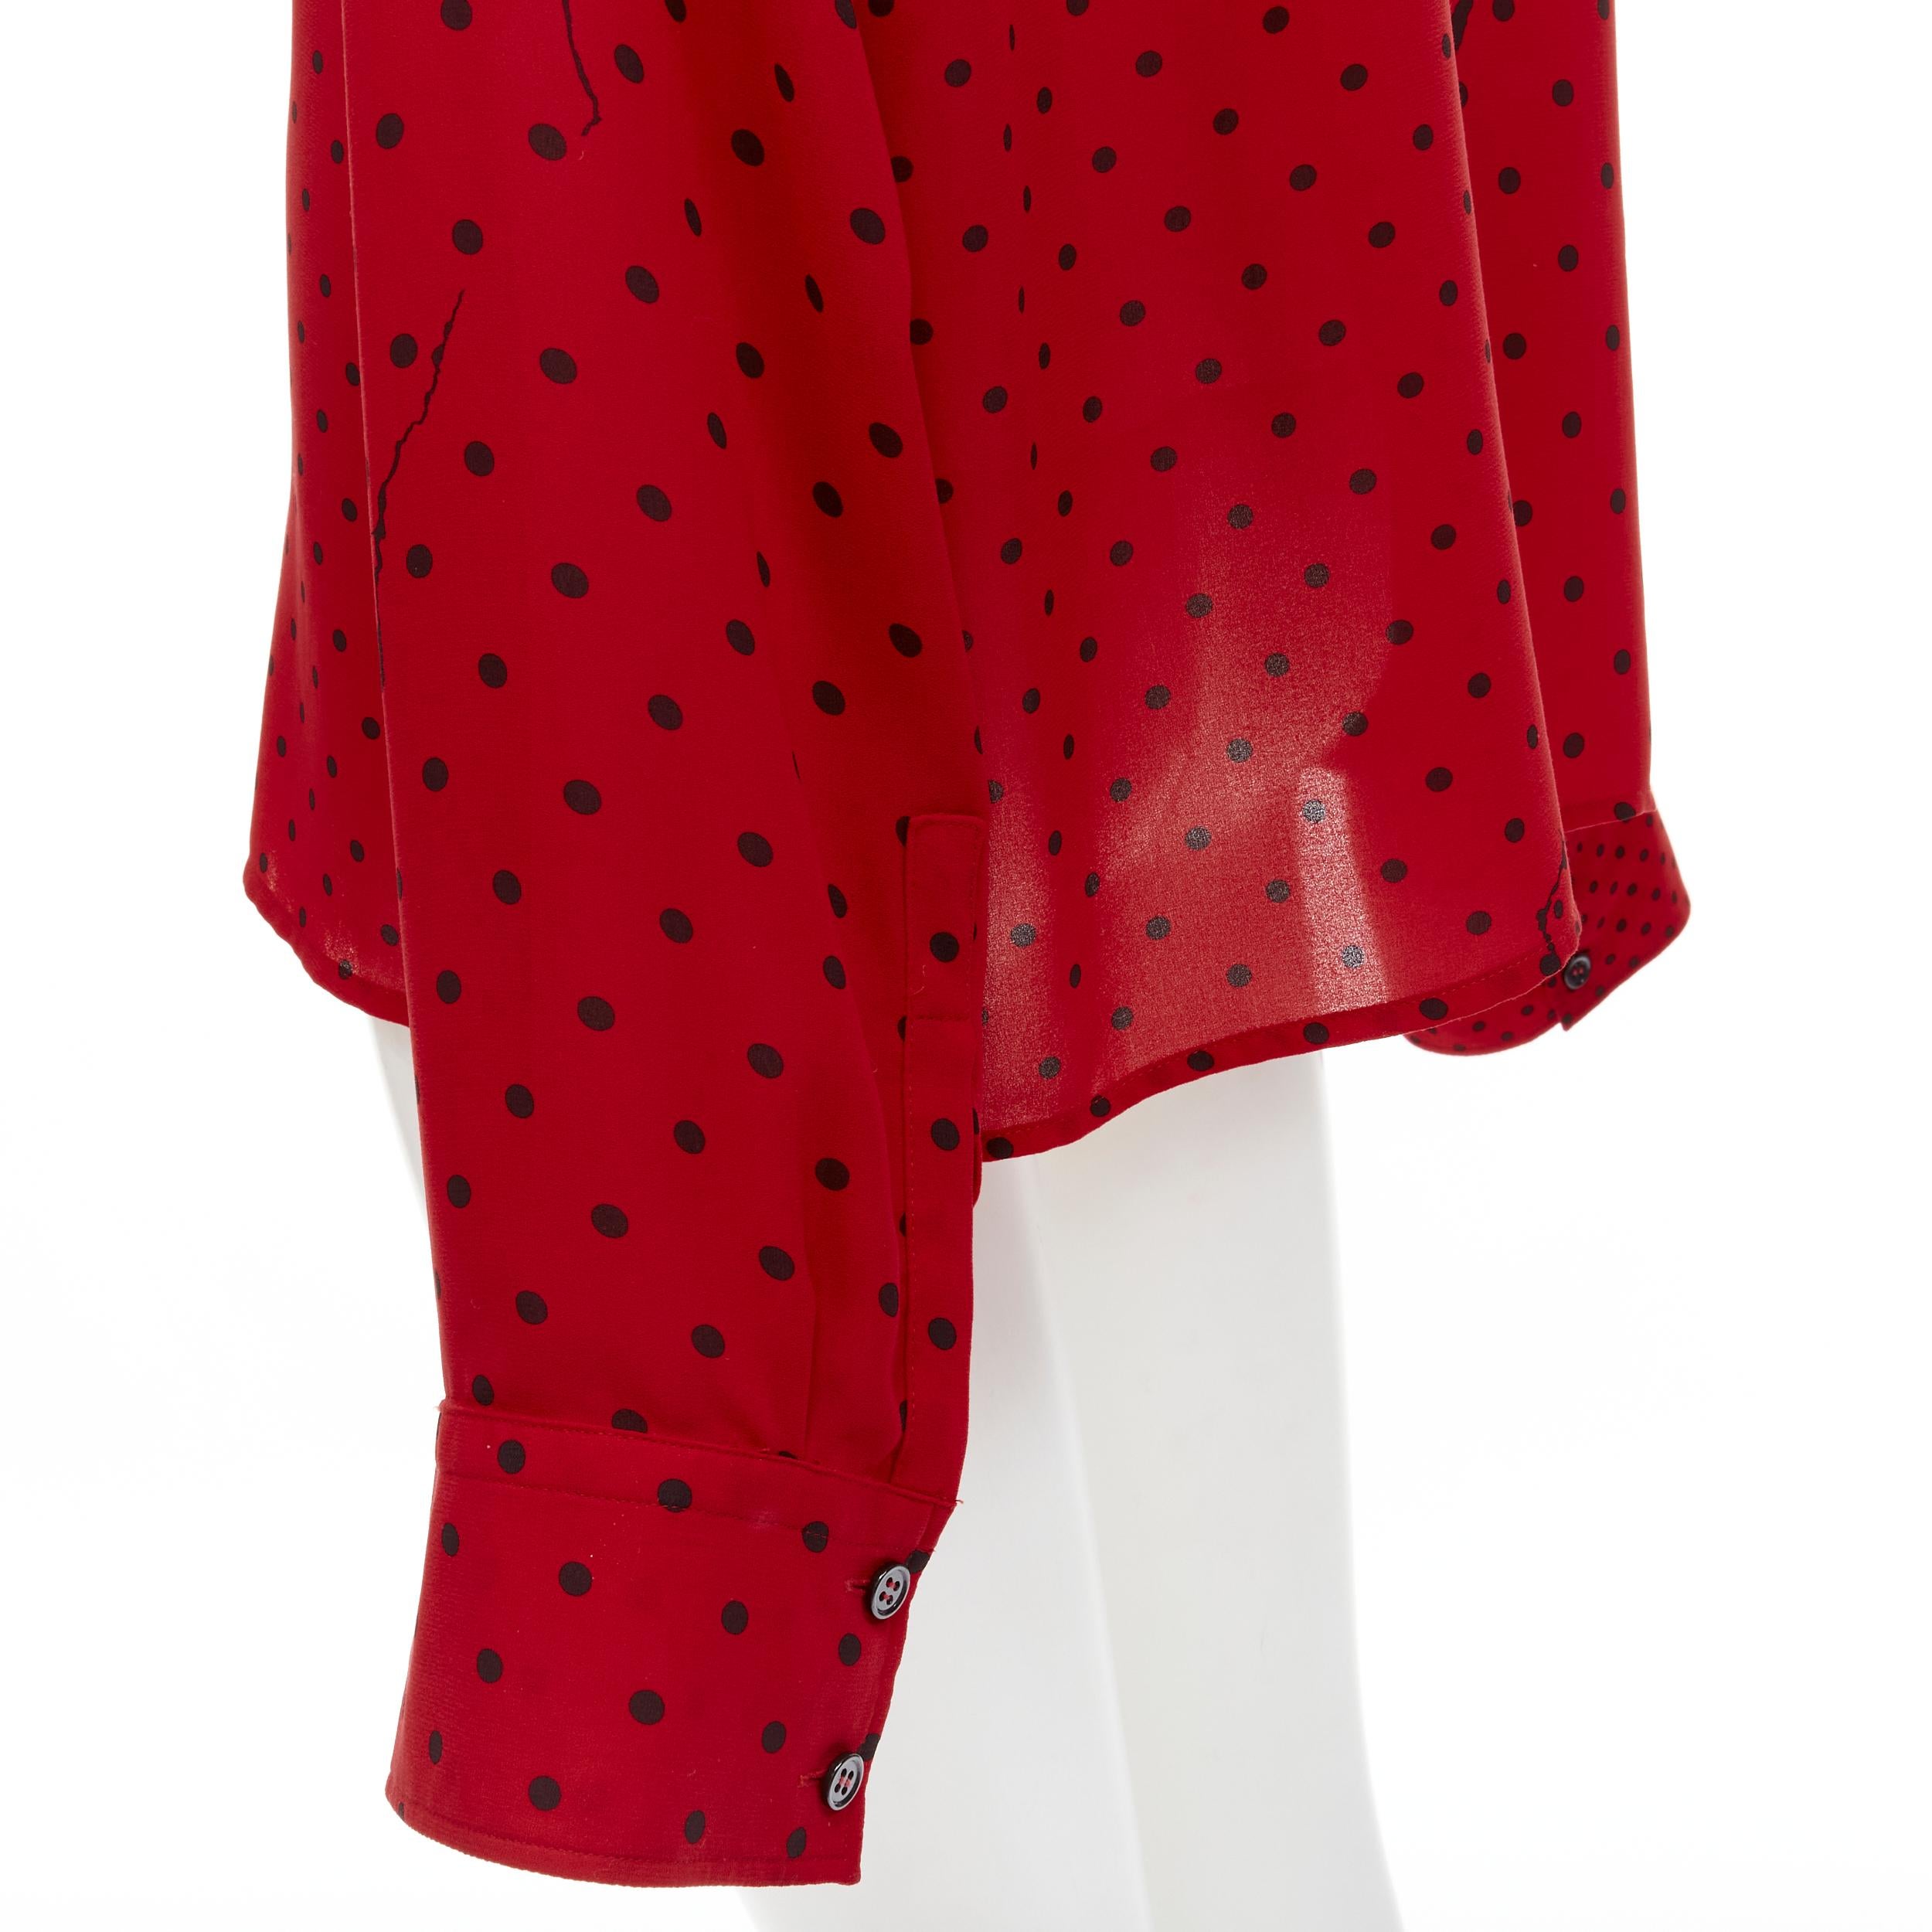 HAIDEr ACKERMANN 2018 red black polka dot print relaxed oversized shirt FR40 M For Sale 2